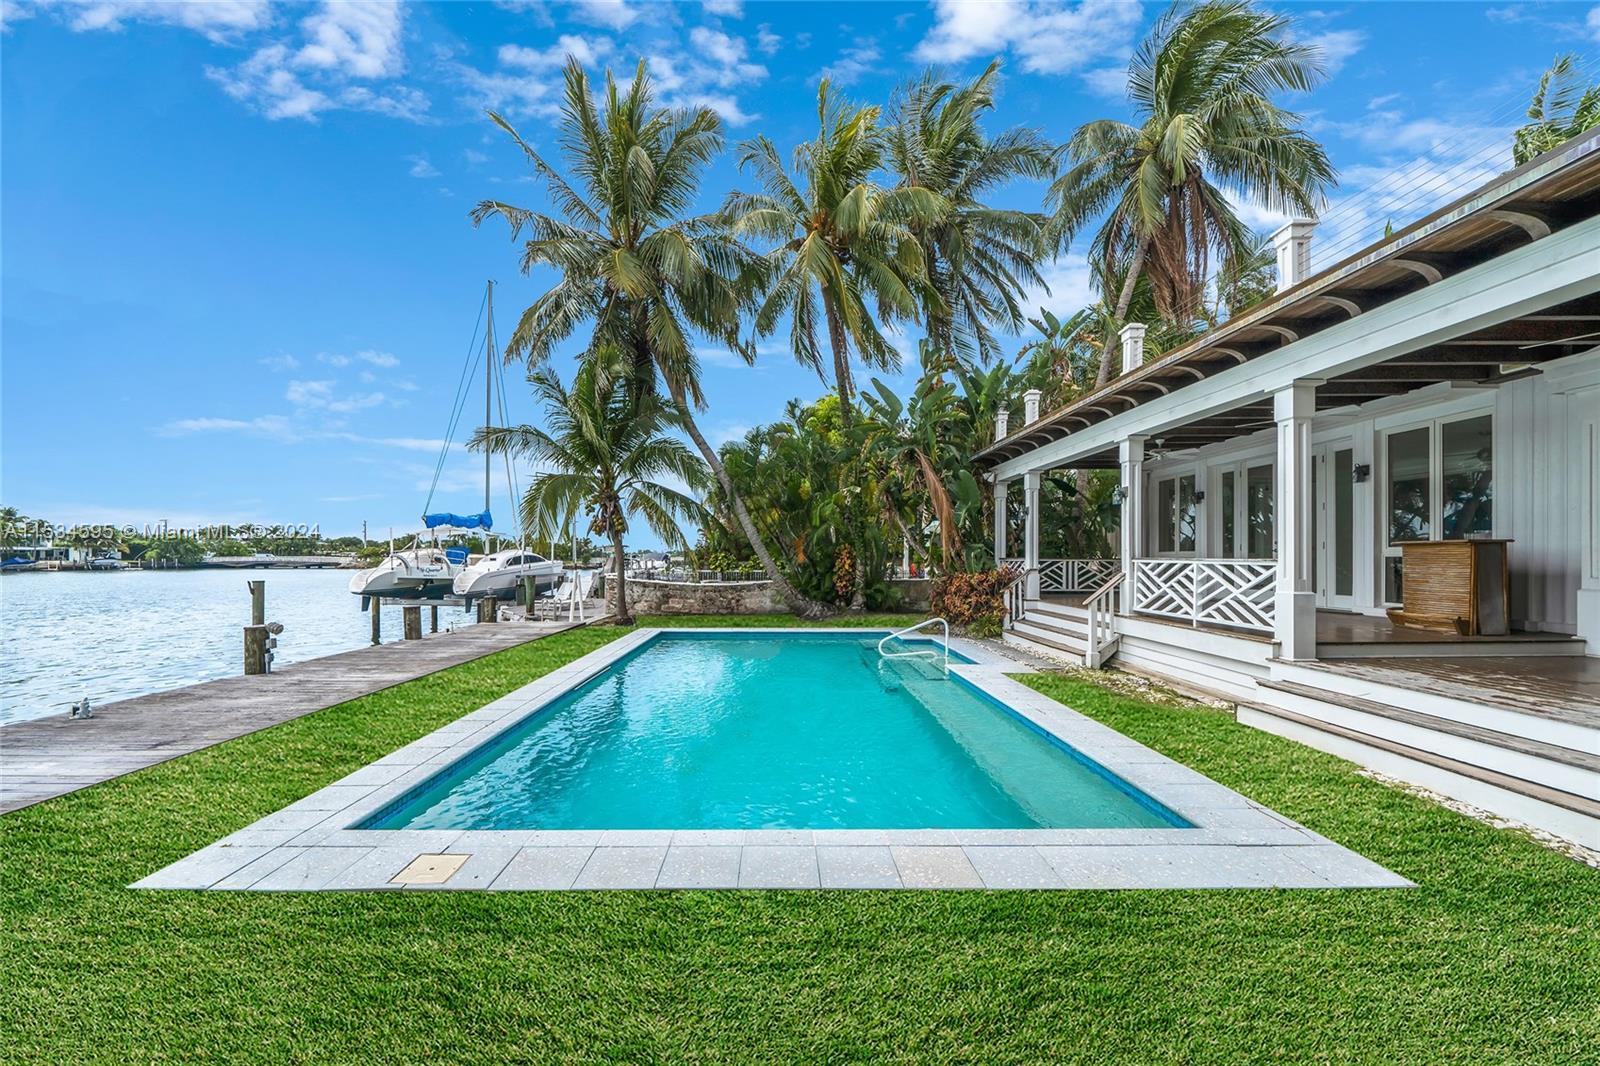 Property for Sale at 325 E San Marino Dr, Miami Beach, Miami-Dade County, Florida - Bedrooms: 4 
Bathrooms: 4  - $9,950,000